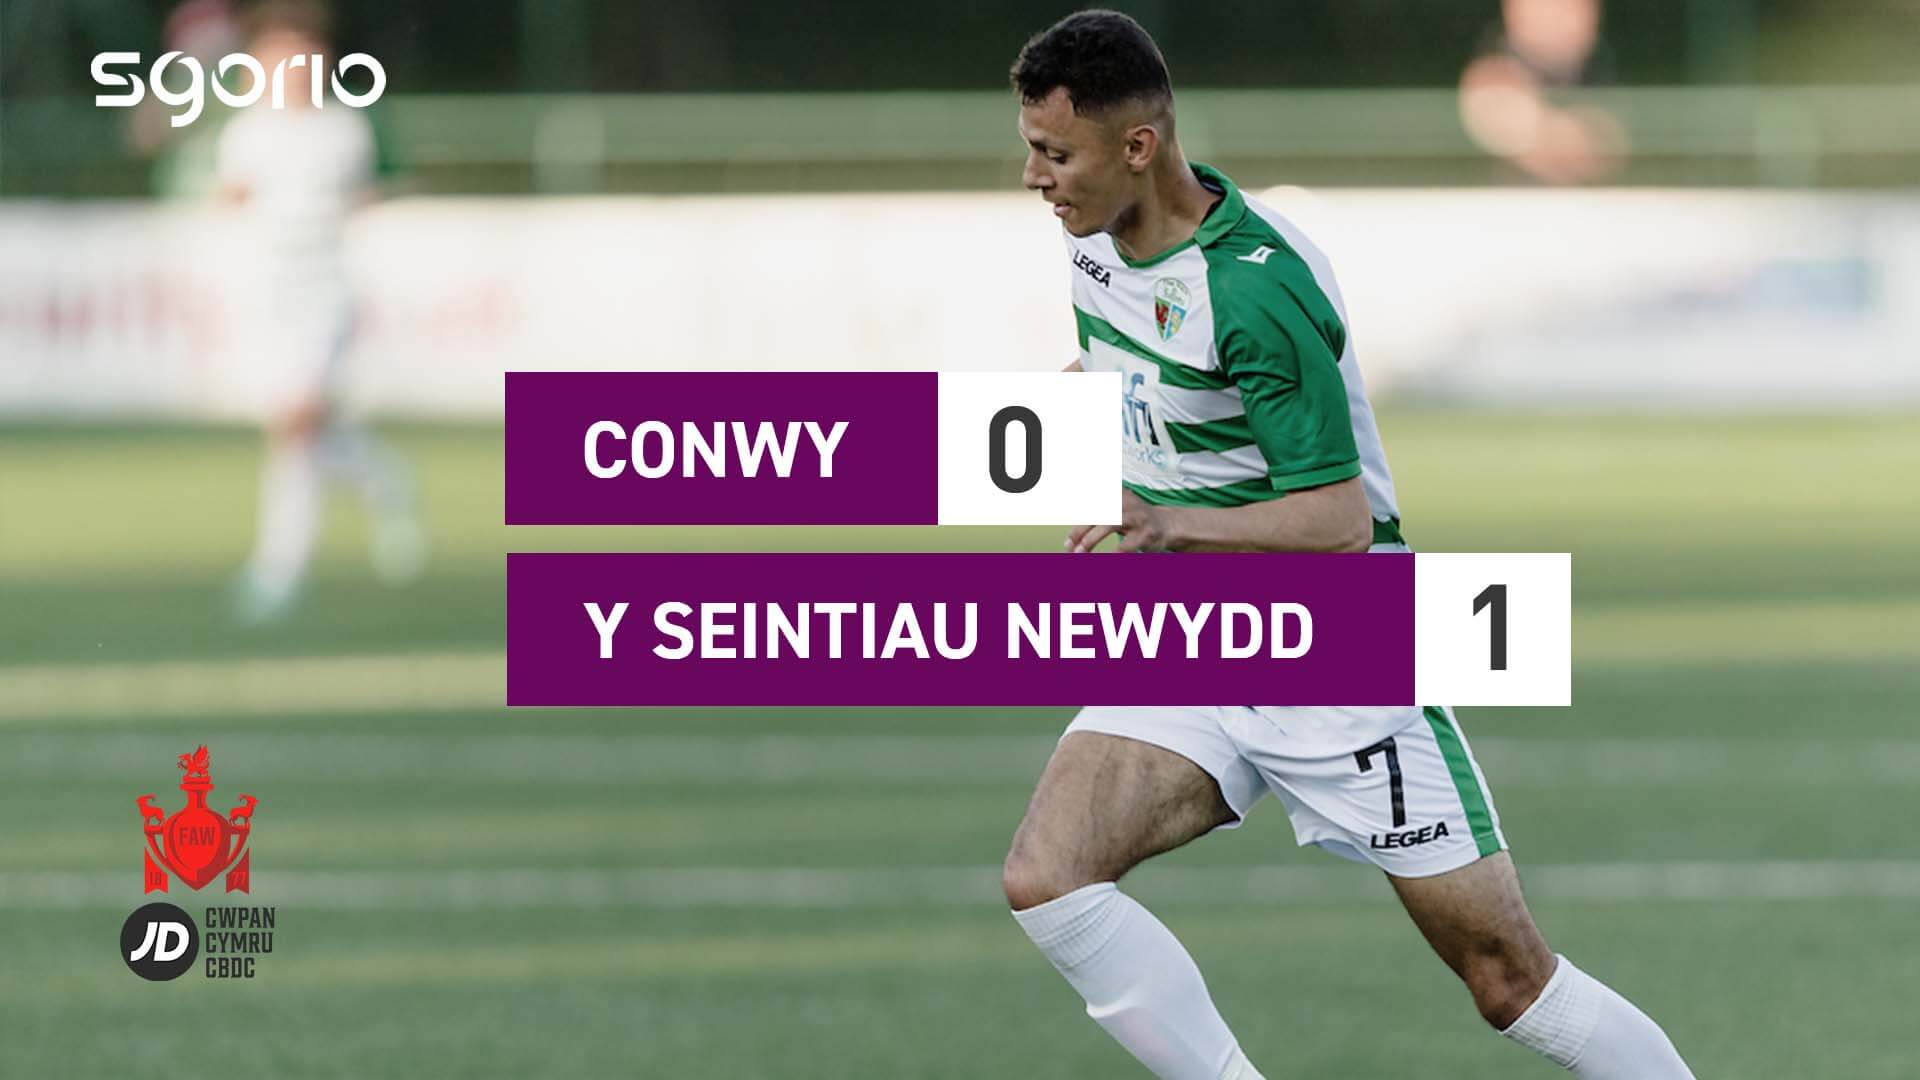 Conwy 0-1 Y Seintiau Newydd